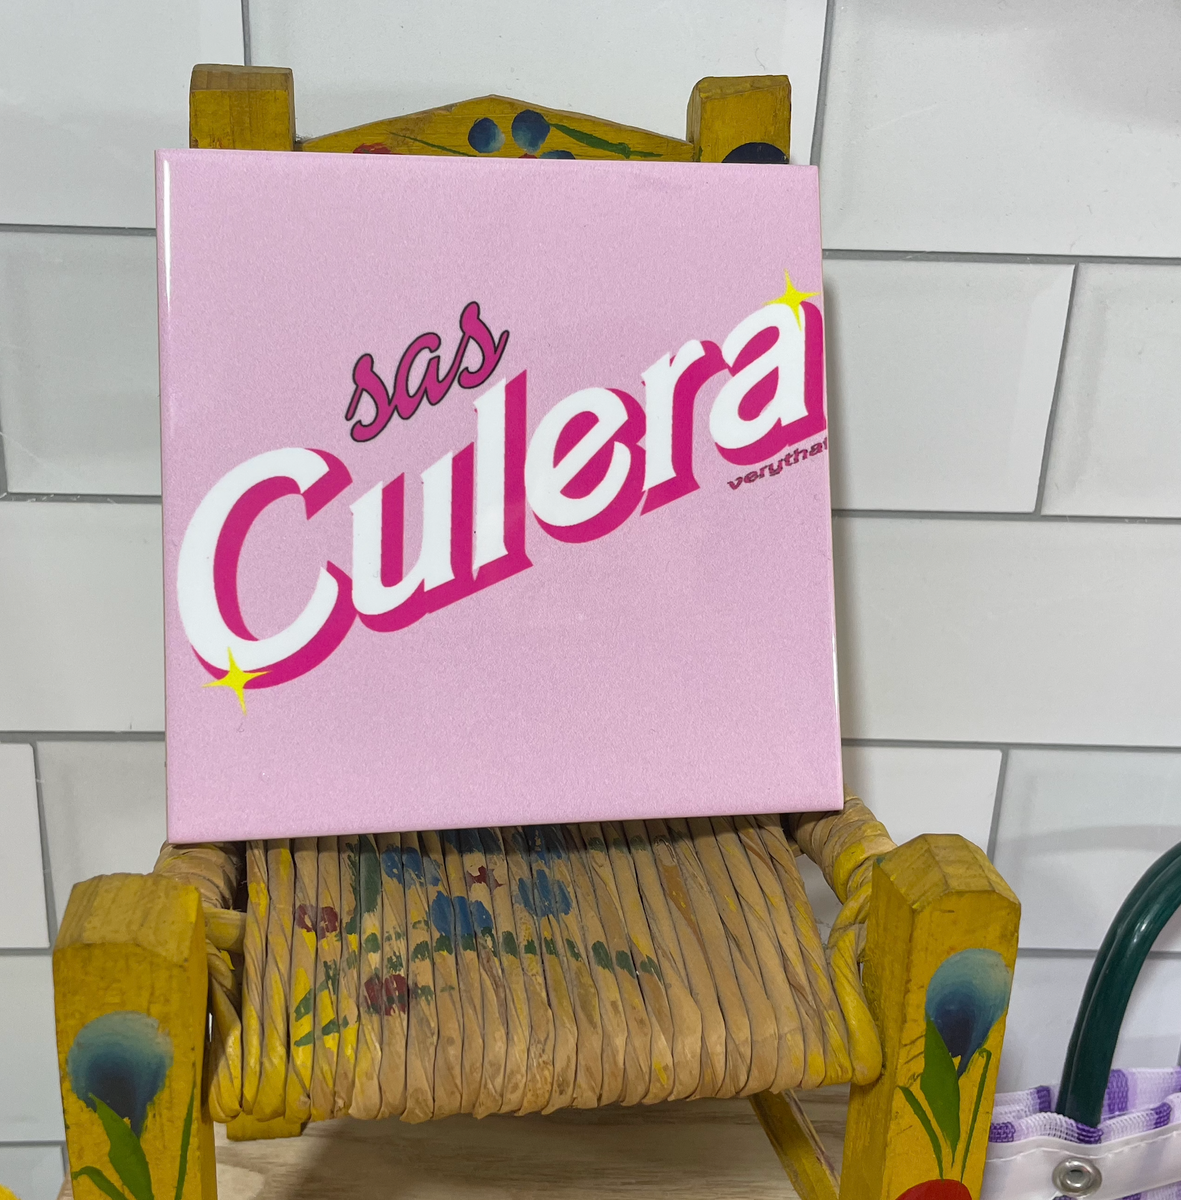 Culera